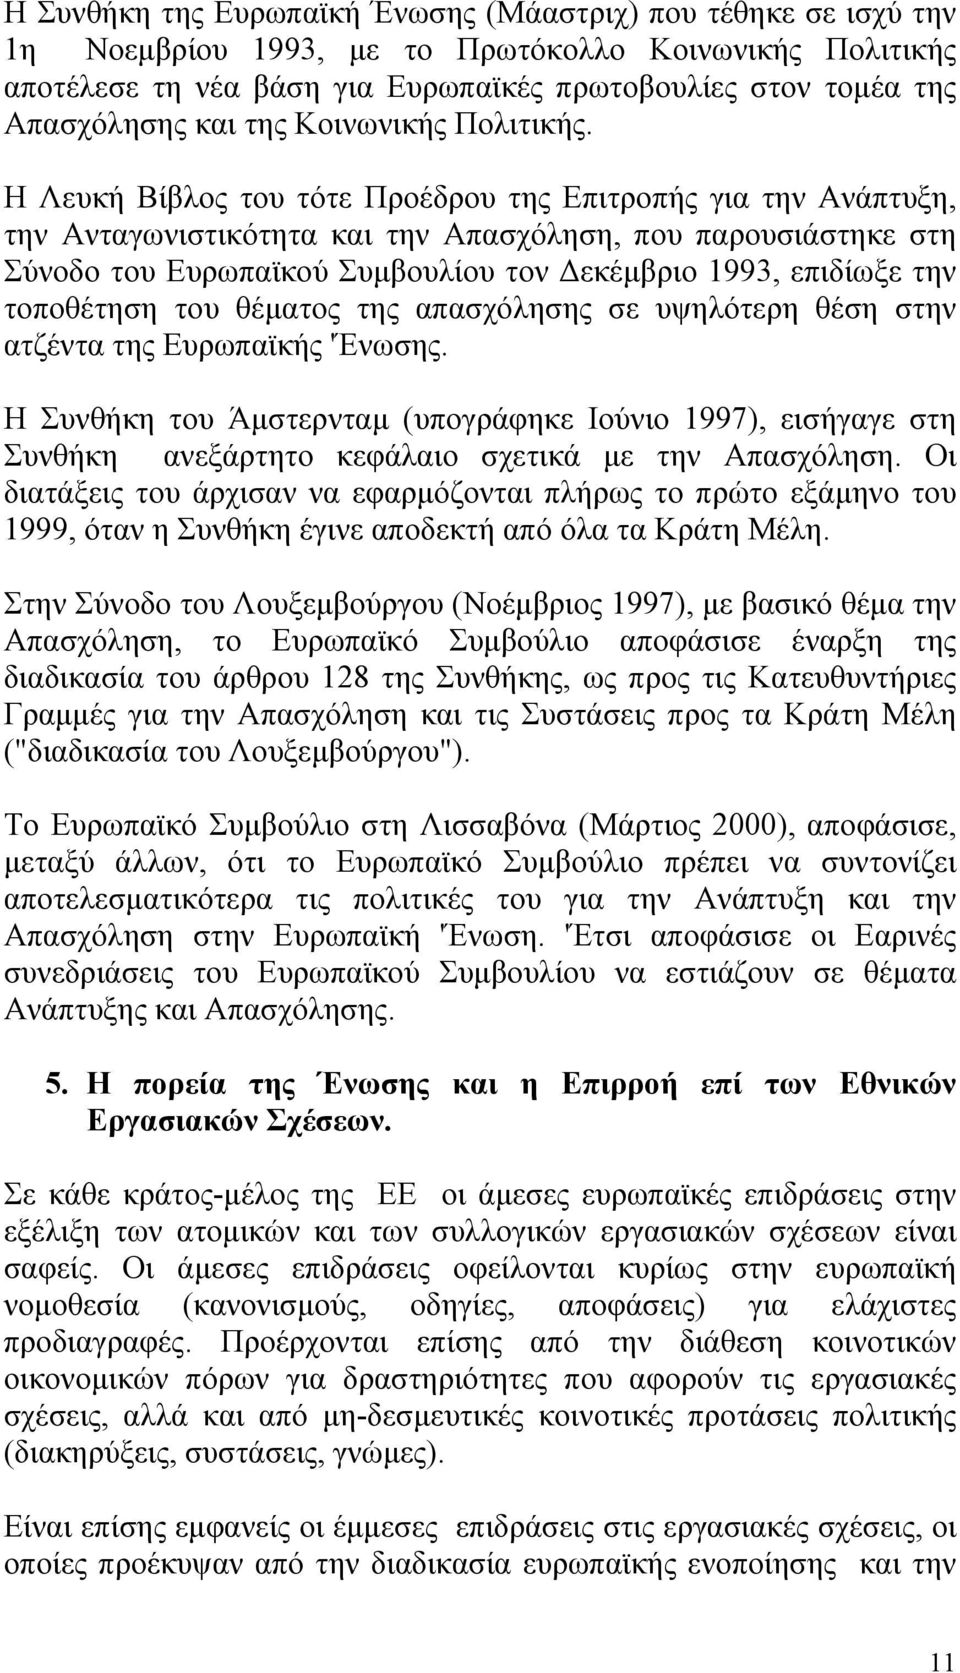 Η Λευκή Βίβλος του τότε Προέδρου της Επιτροπής για την Ανάπτυξη, την Ανταγωνιστικότητα και την Απασχόληση, που παρουσιάστηκε στη Σύνοδο του Ευρωπαϊκού Συµβουλίου τον εκέµβριο 1993, επιδίωξε την